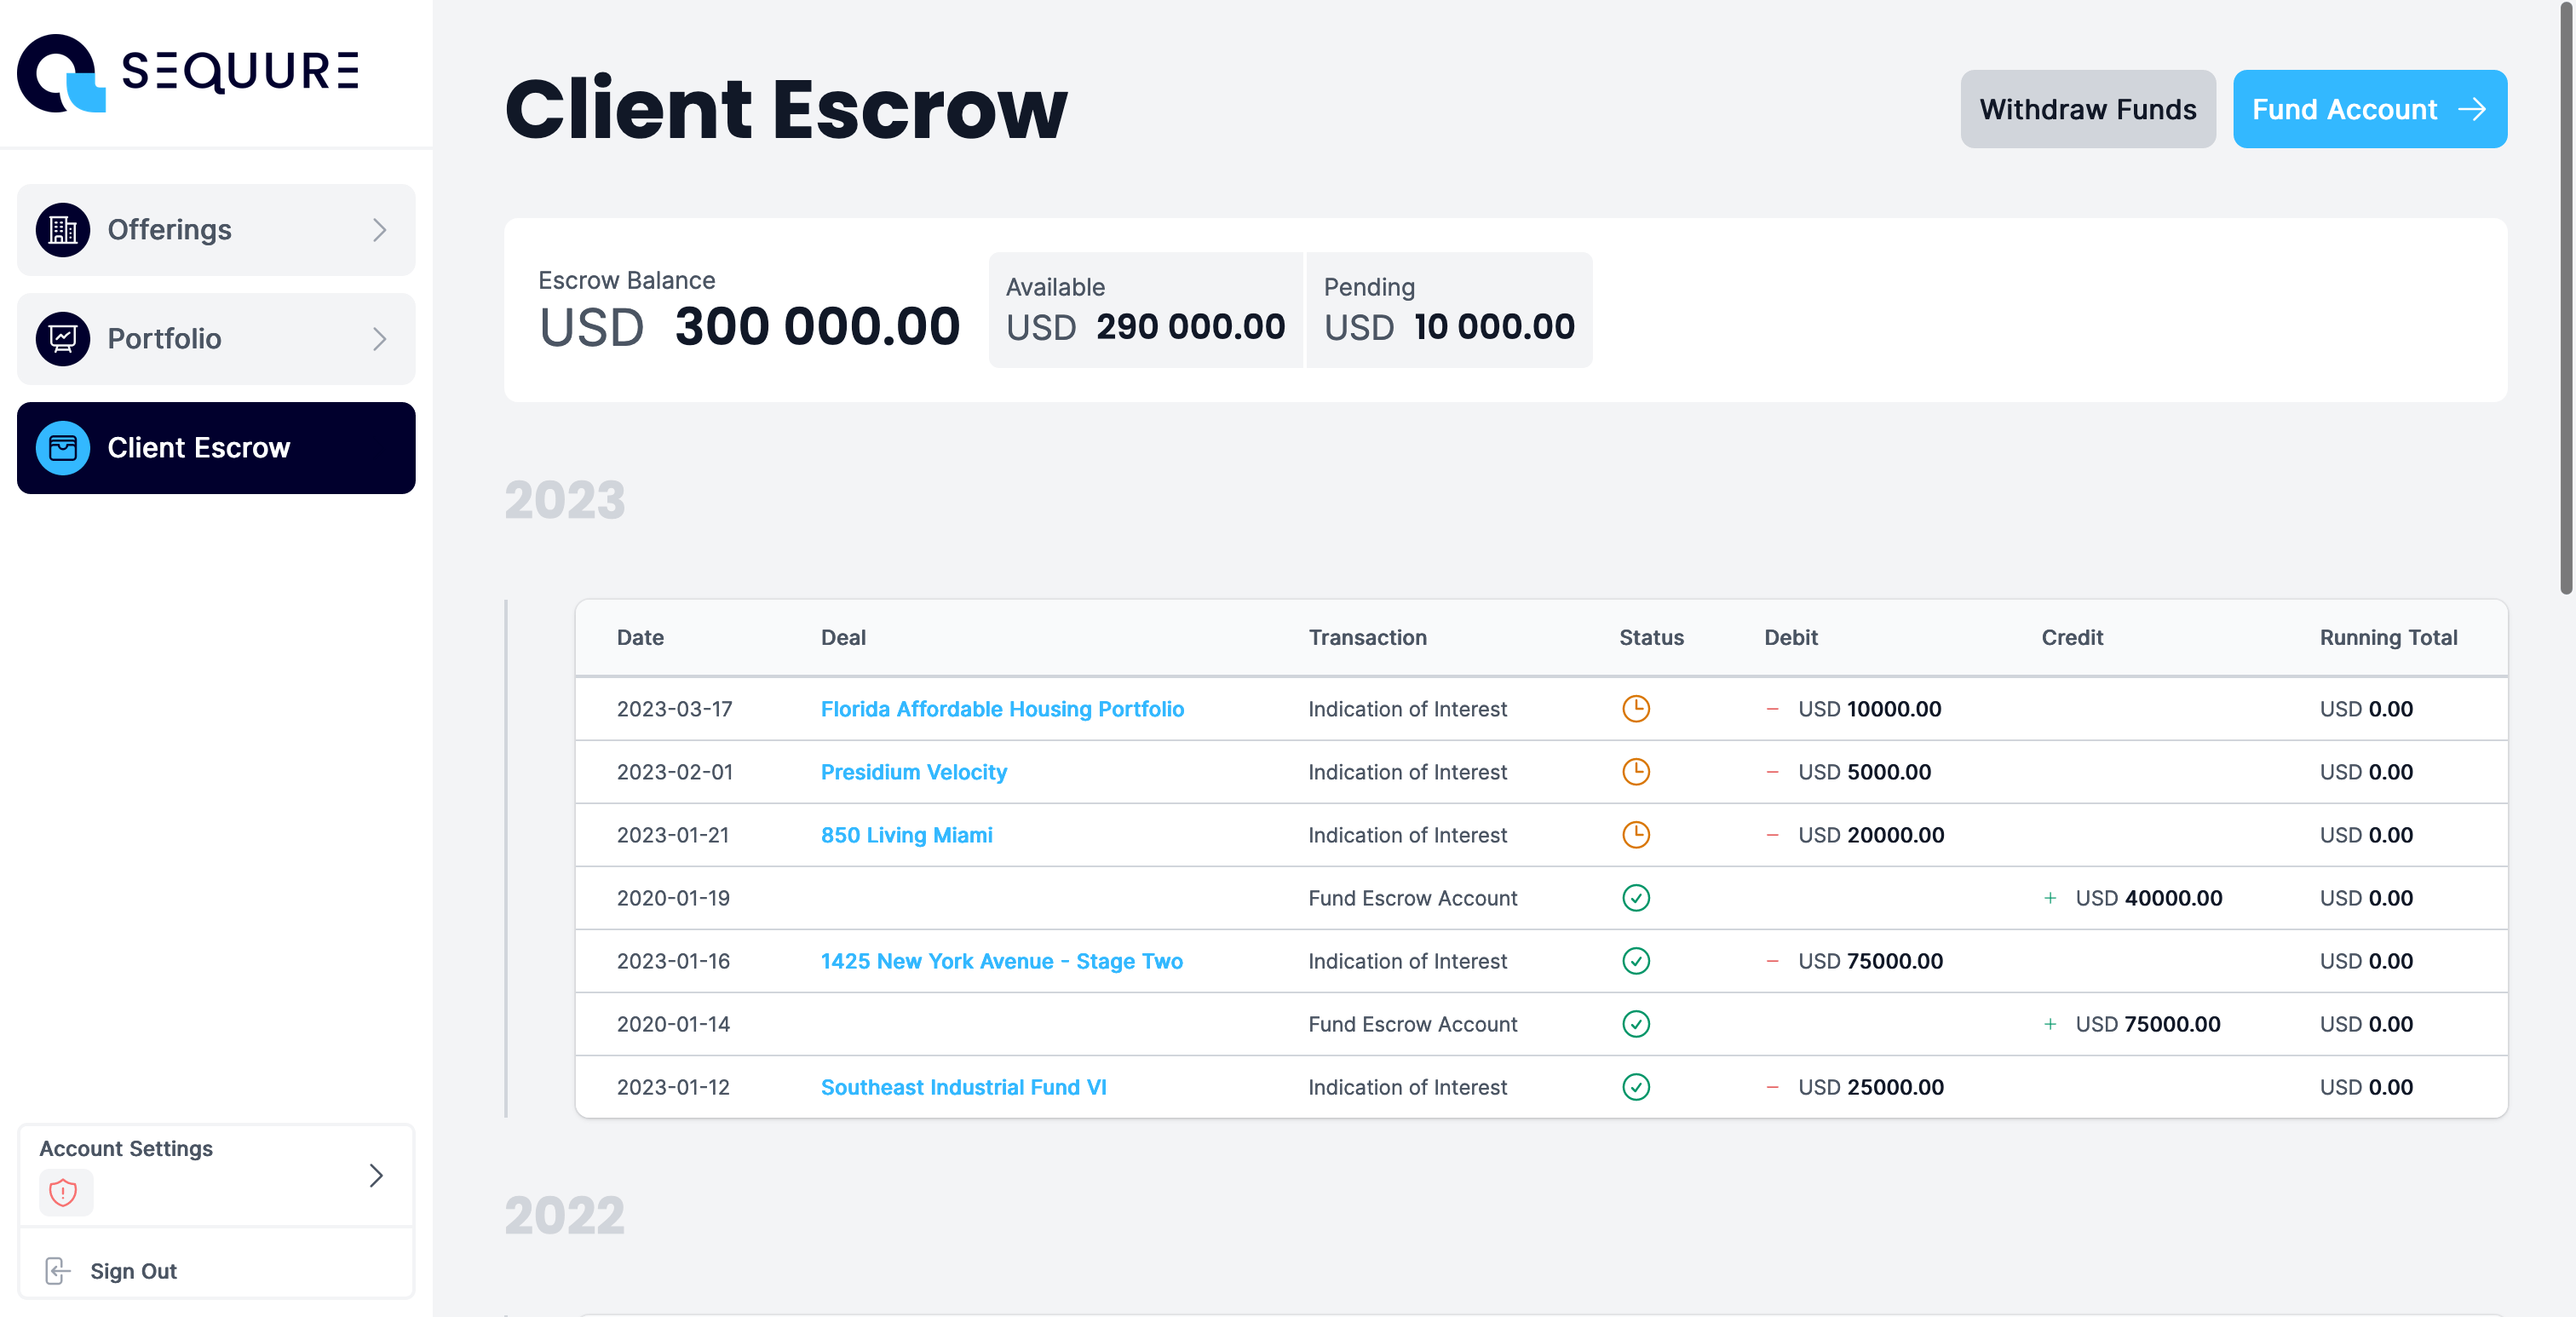 Sequure Platform Client Escrow